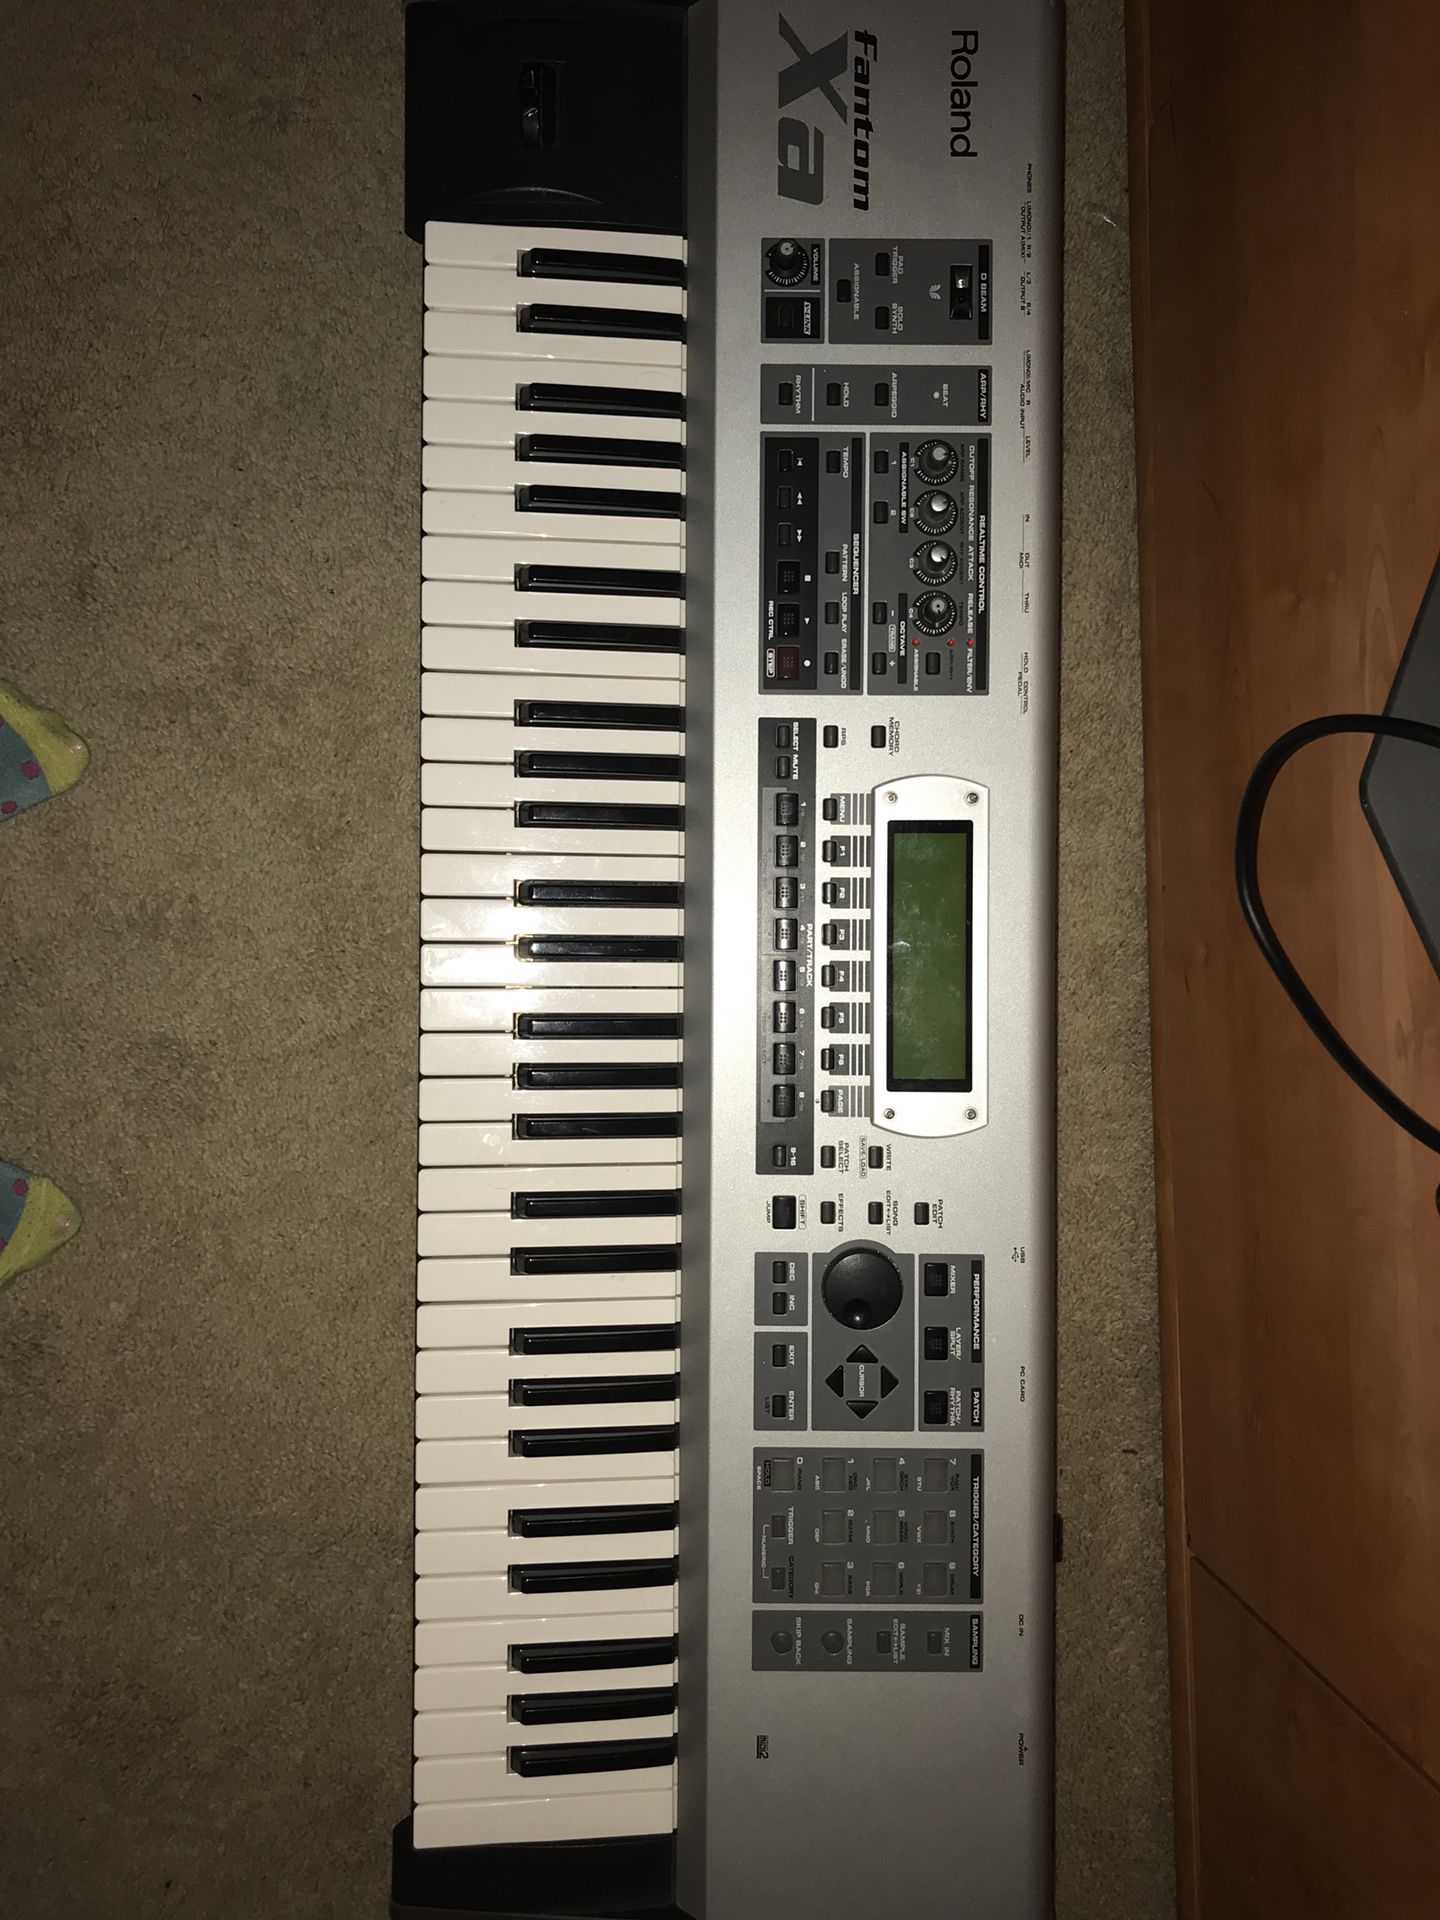 Fantom Keyboard